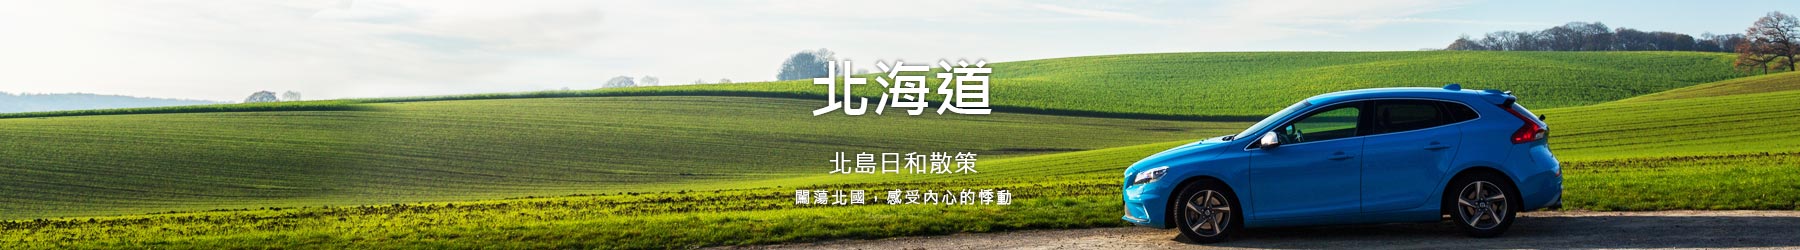 北海道頂部形象banner